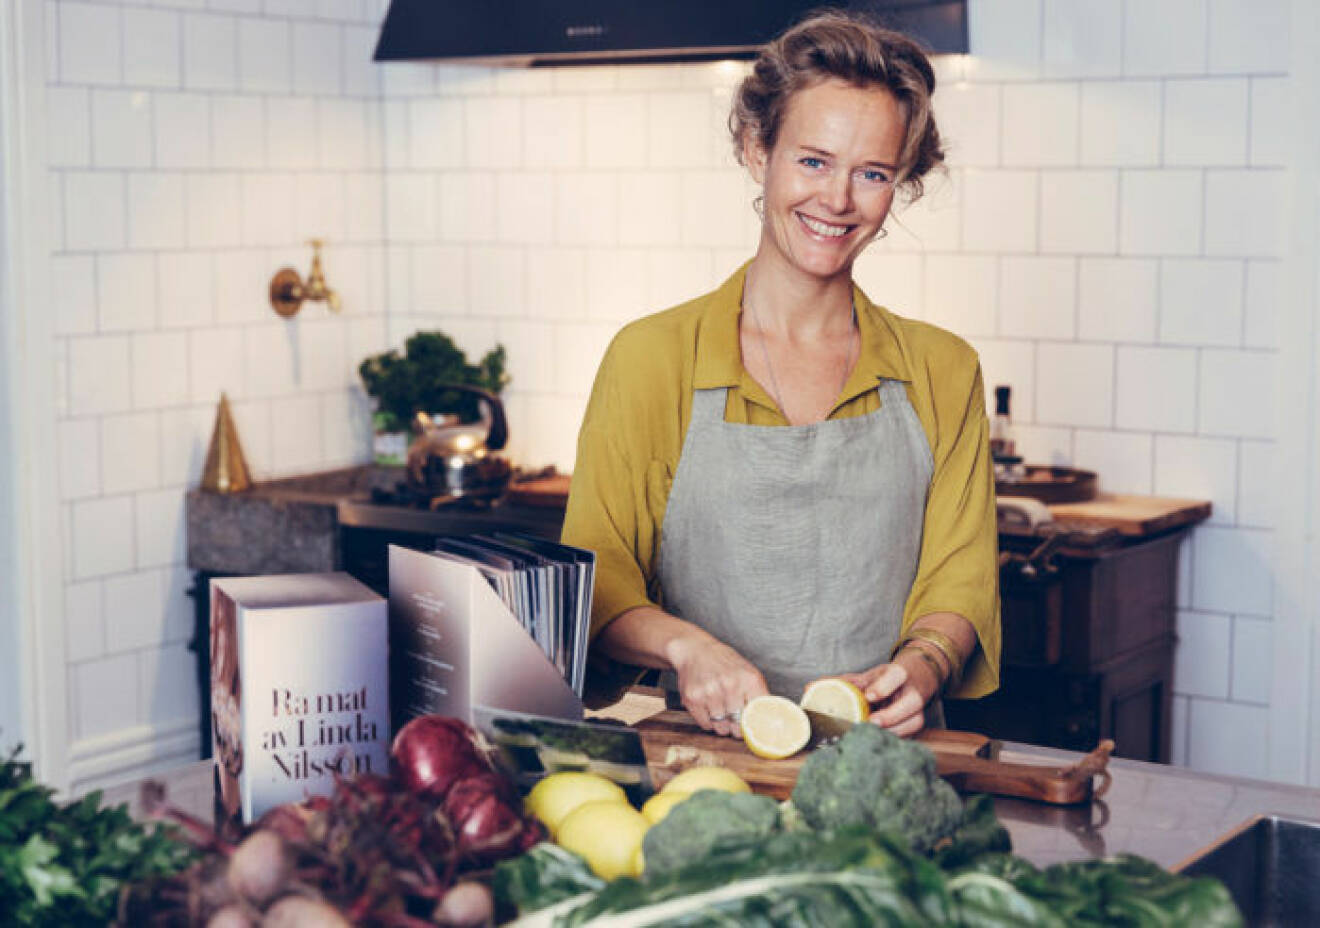 Linda Nilsson har skrivit boken "Rå mat".